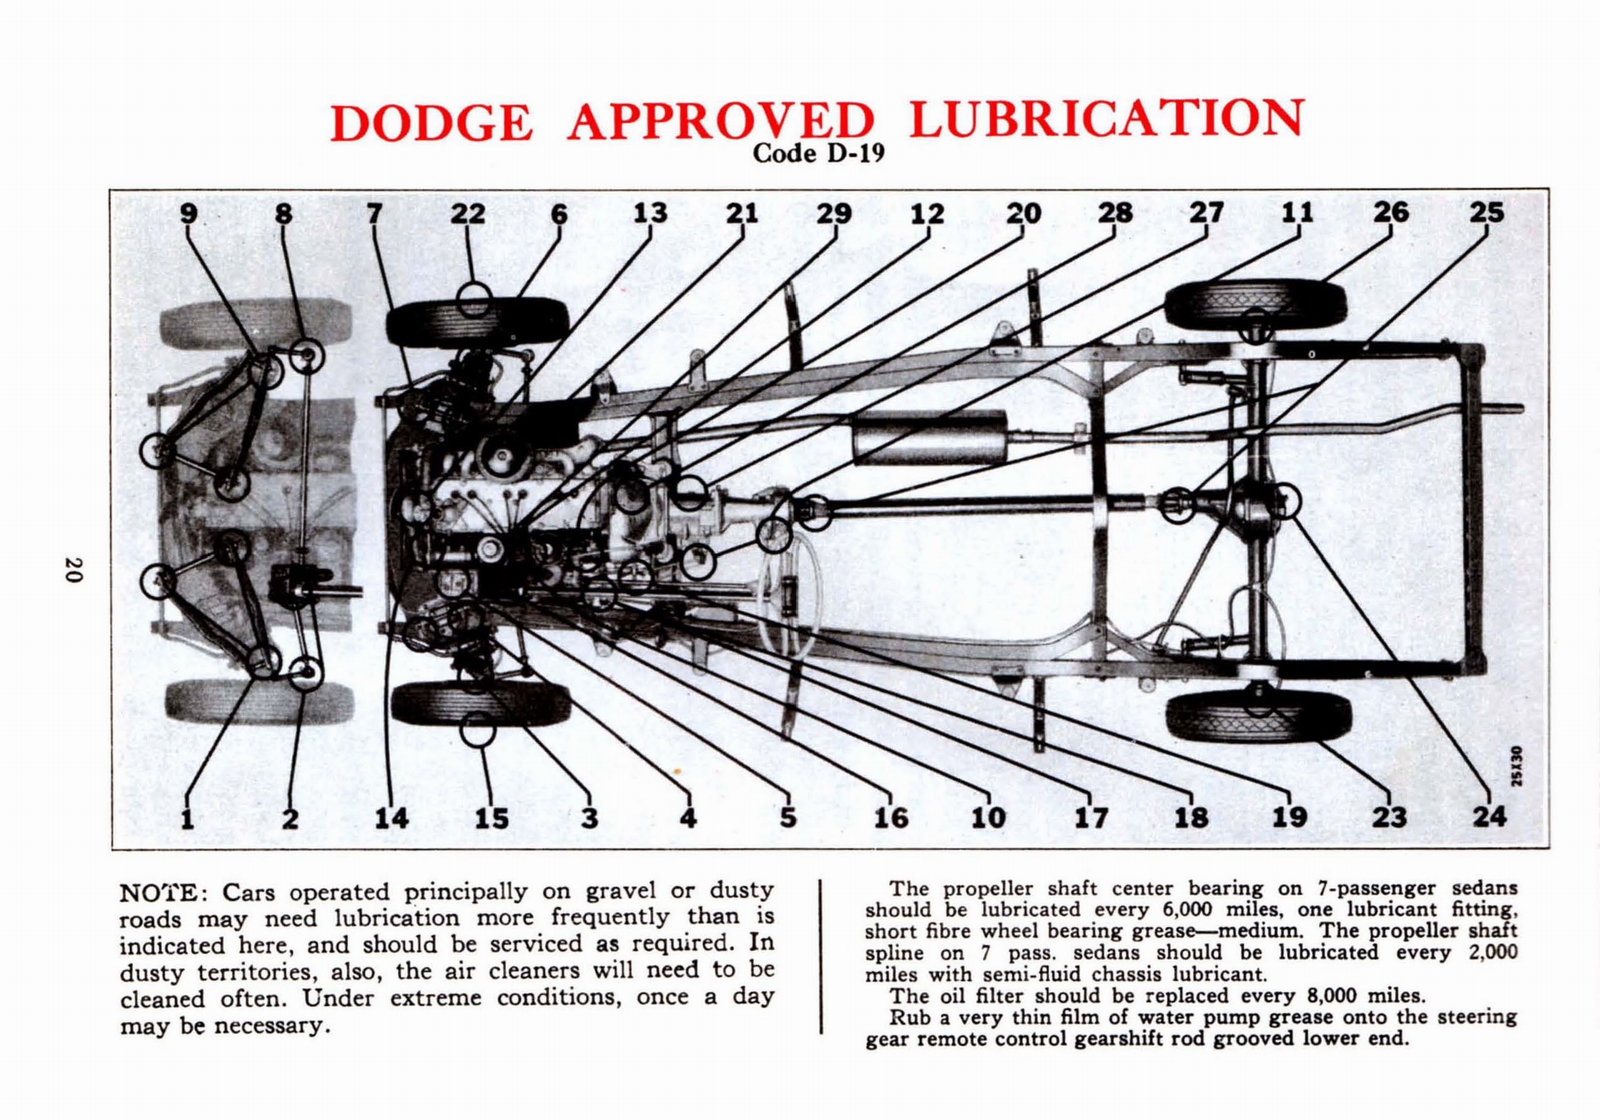 n_1941 Dodge Owners Manual-20.jpg